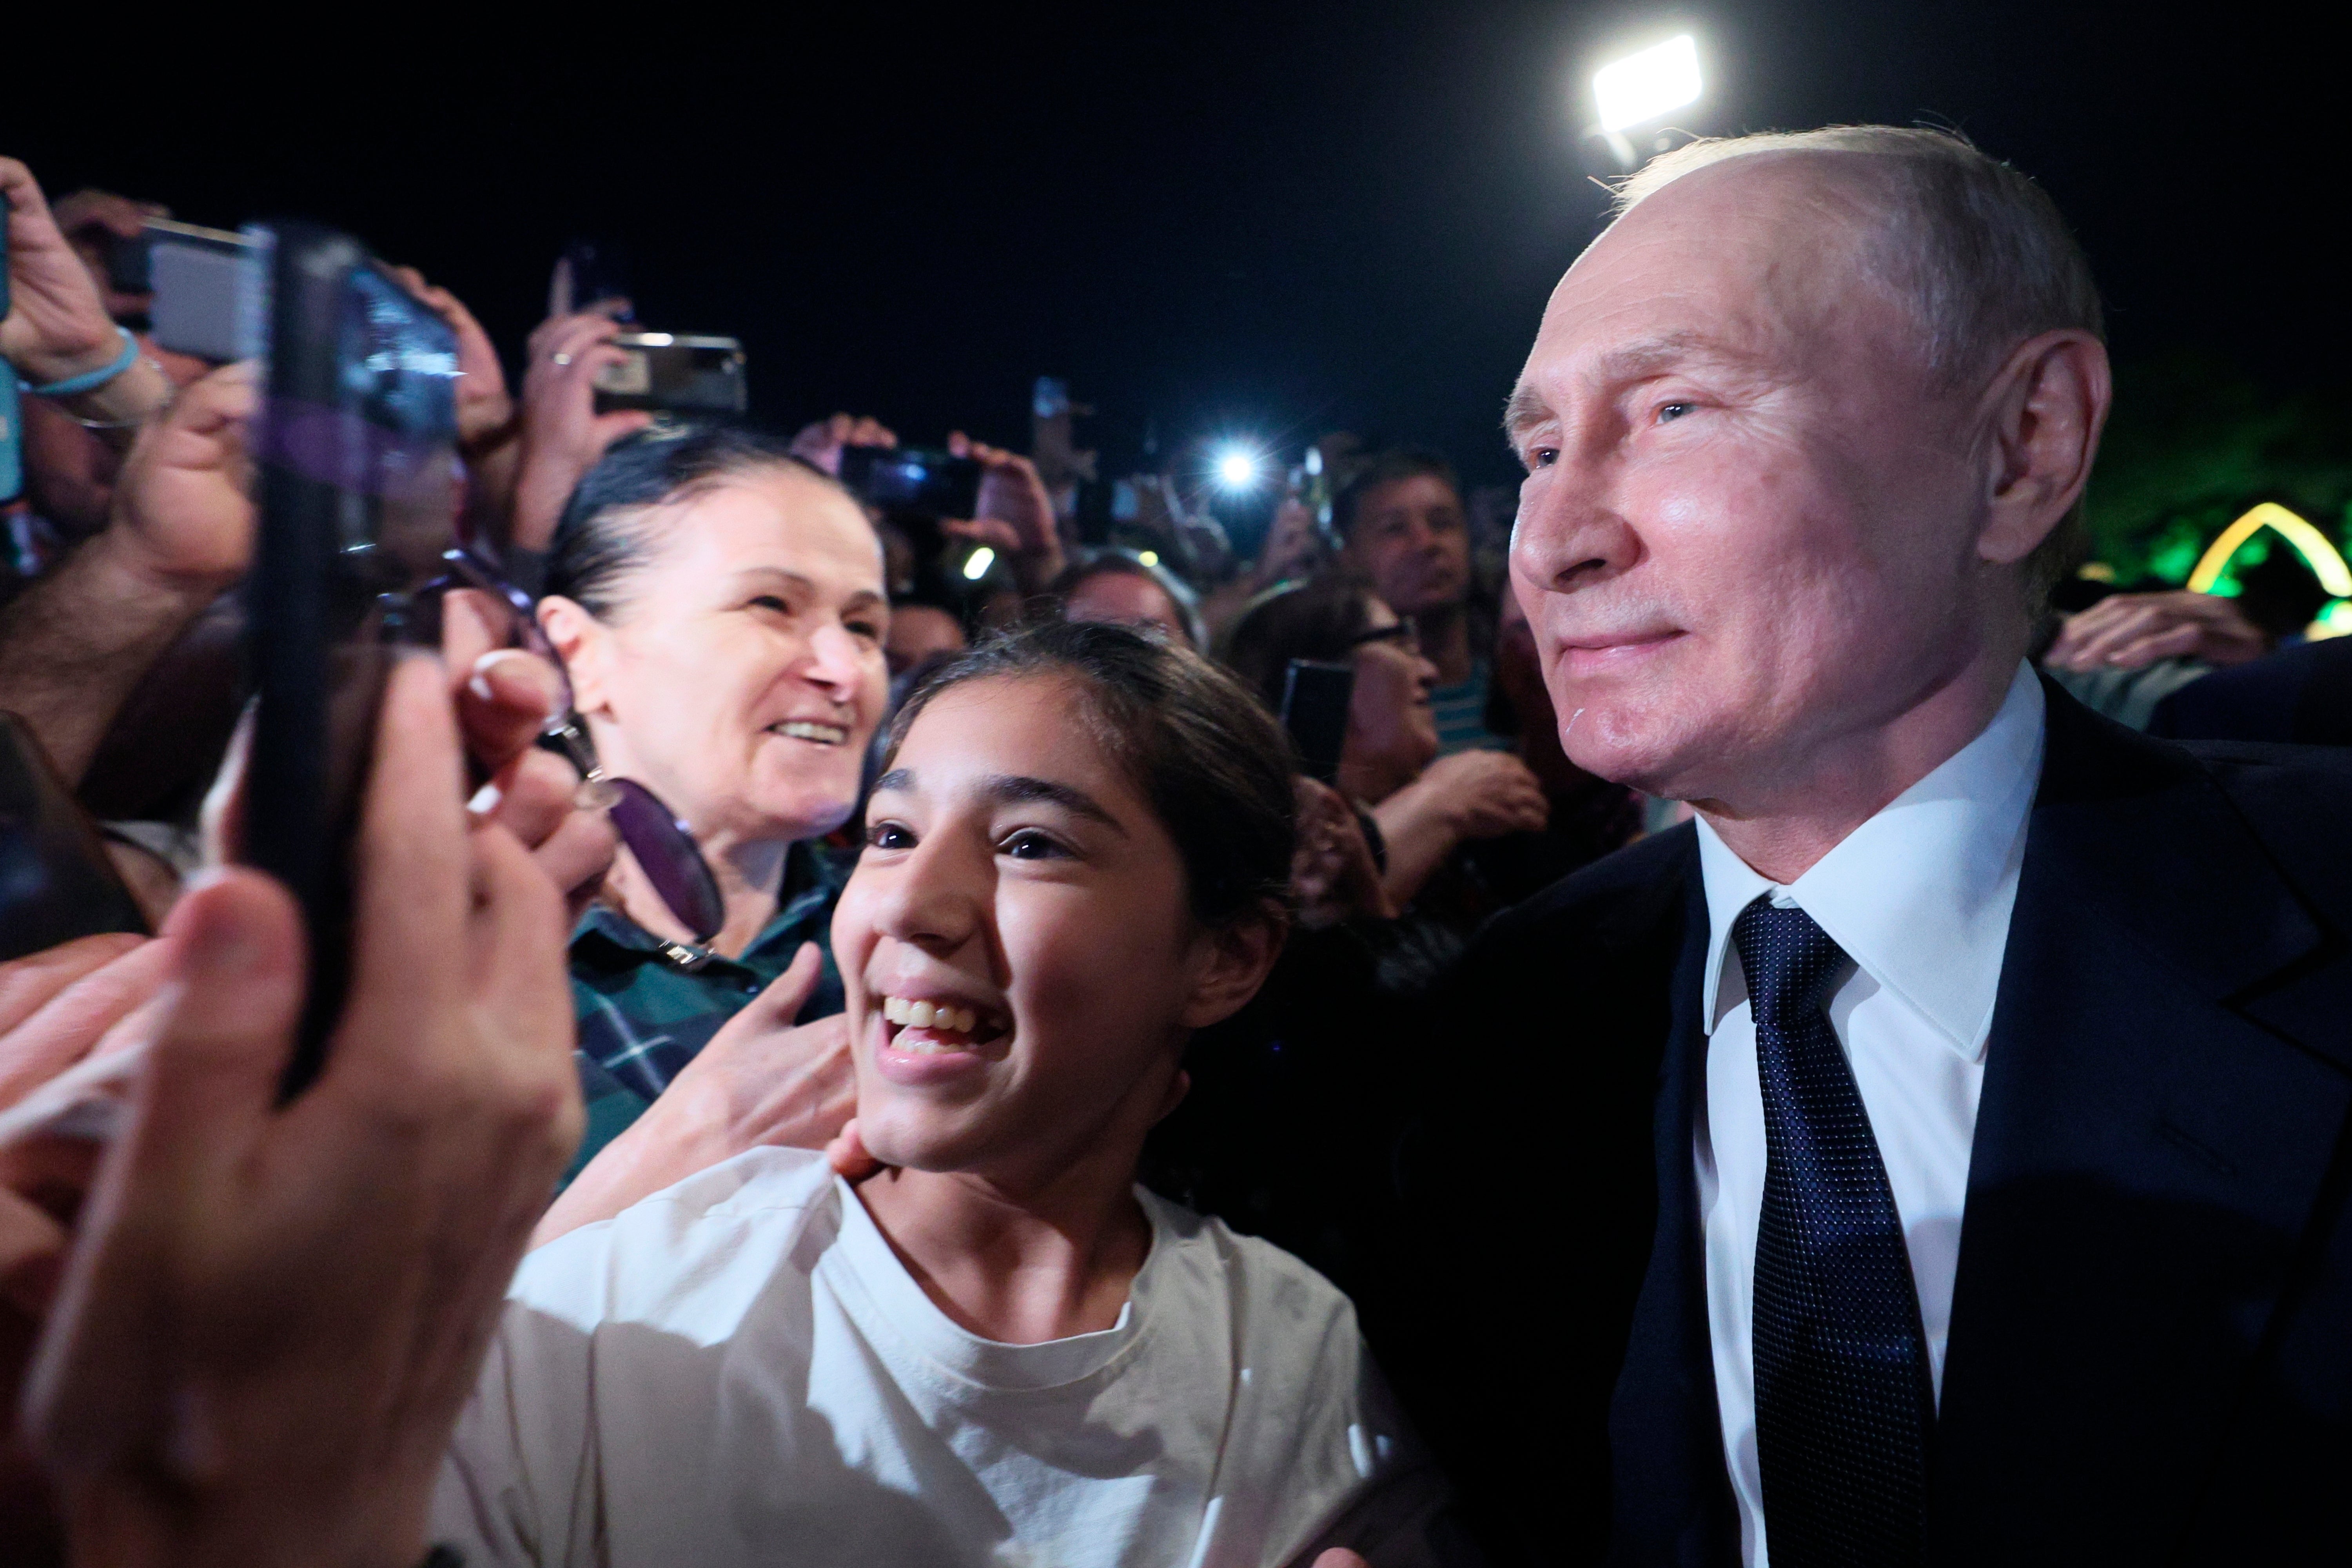 El presidente de Rusia fue visto posando con admiradores en una rara aparición pública